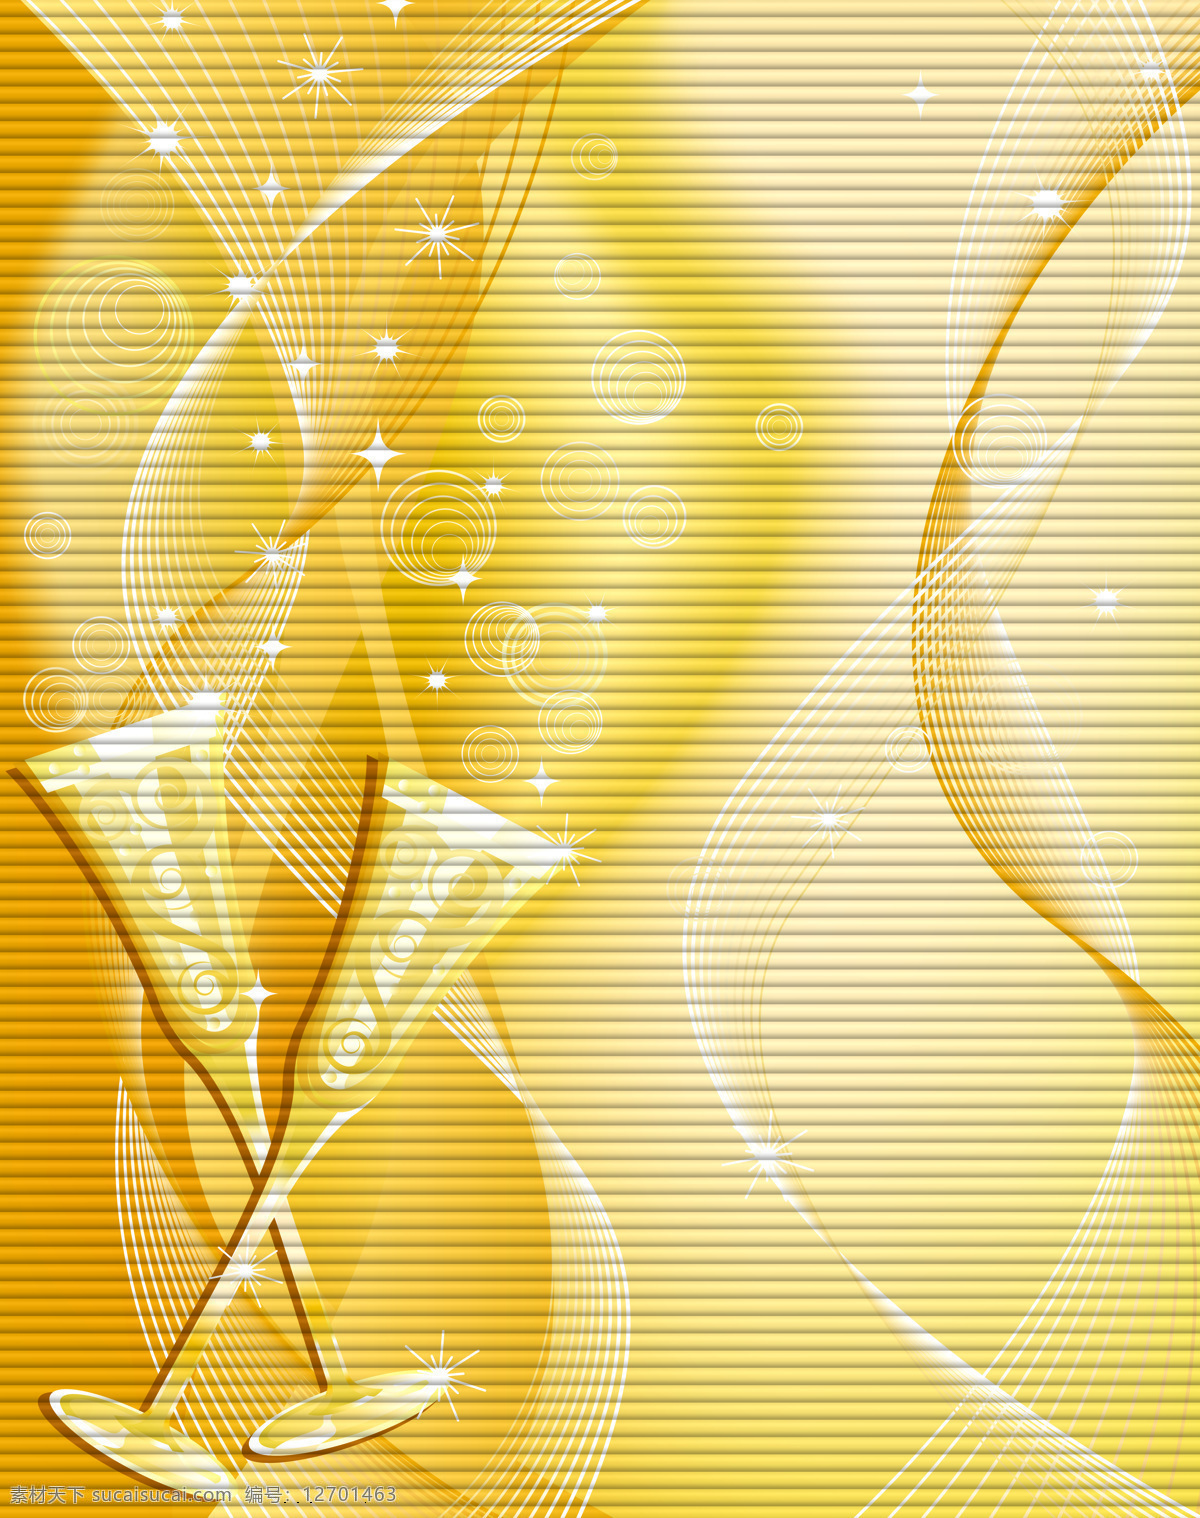 杯子 背景底纹 底纹边框 花纹 金黄色 金黄色背景 金色 酒杯 相依 设计素材 模板下载 相依的杯子 移门 线条 条纹 星光 圆 矢量图 日常生活